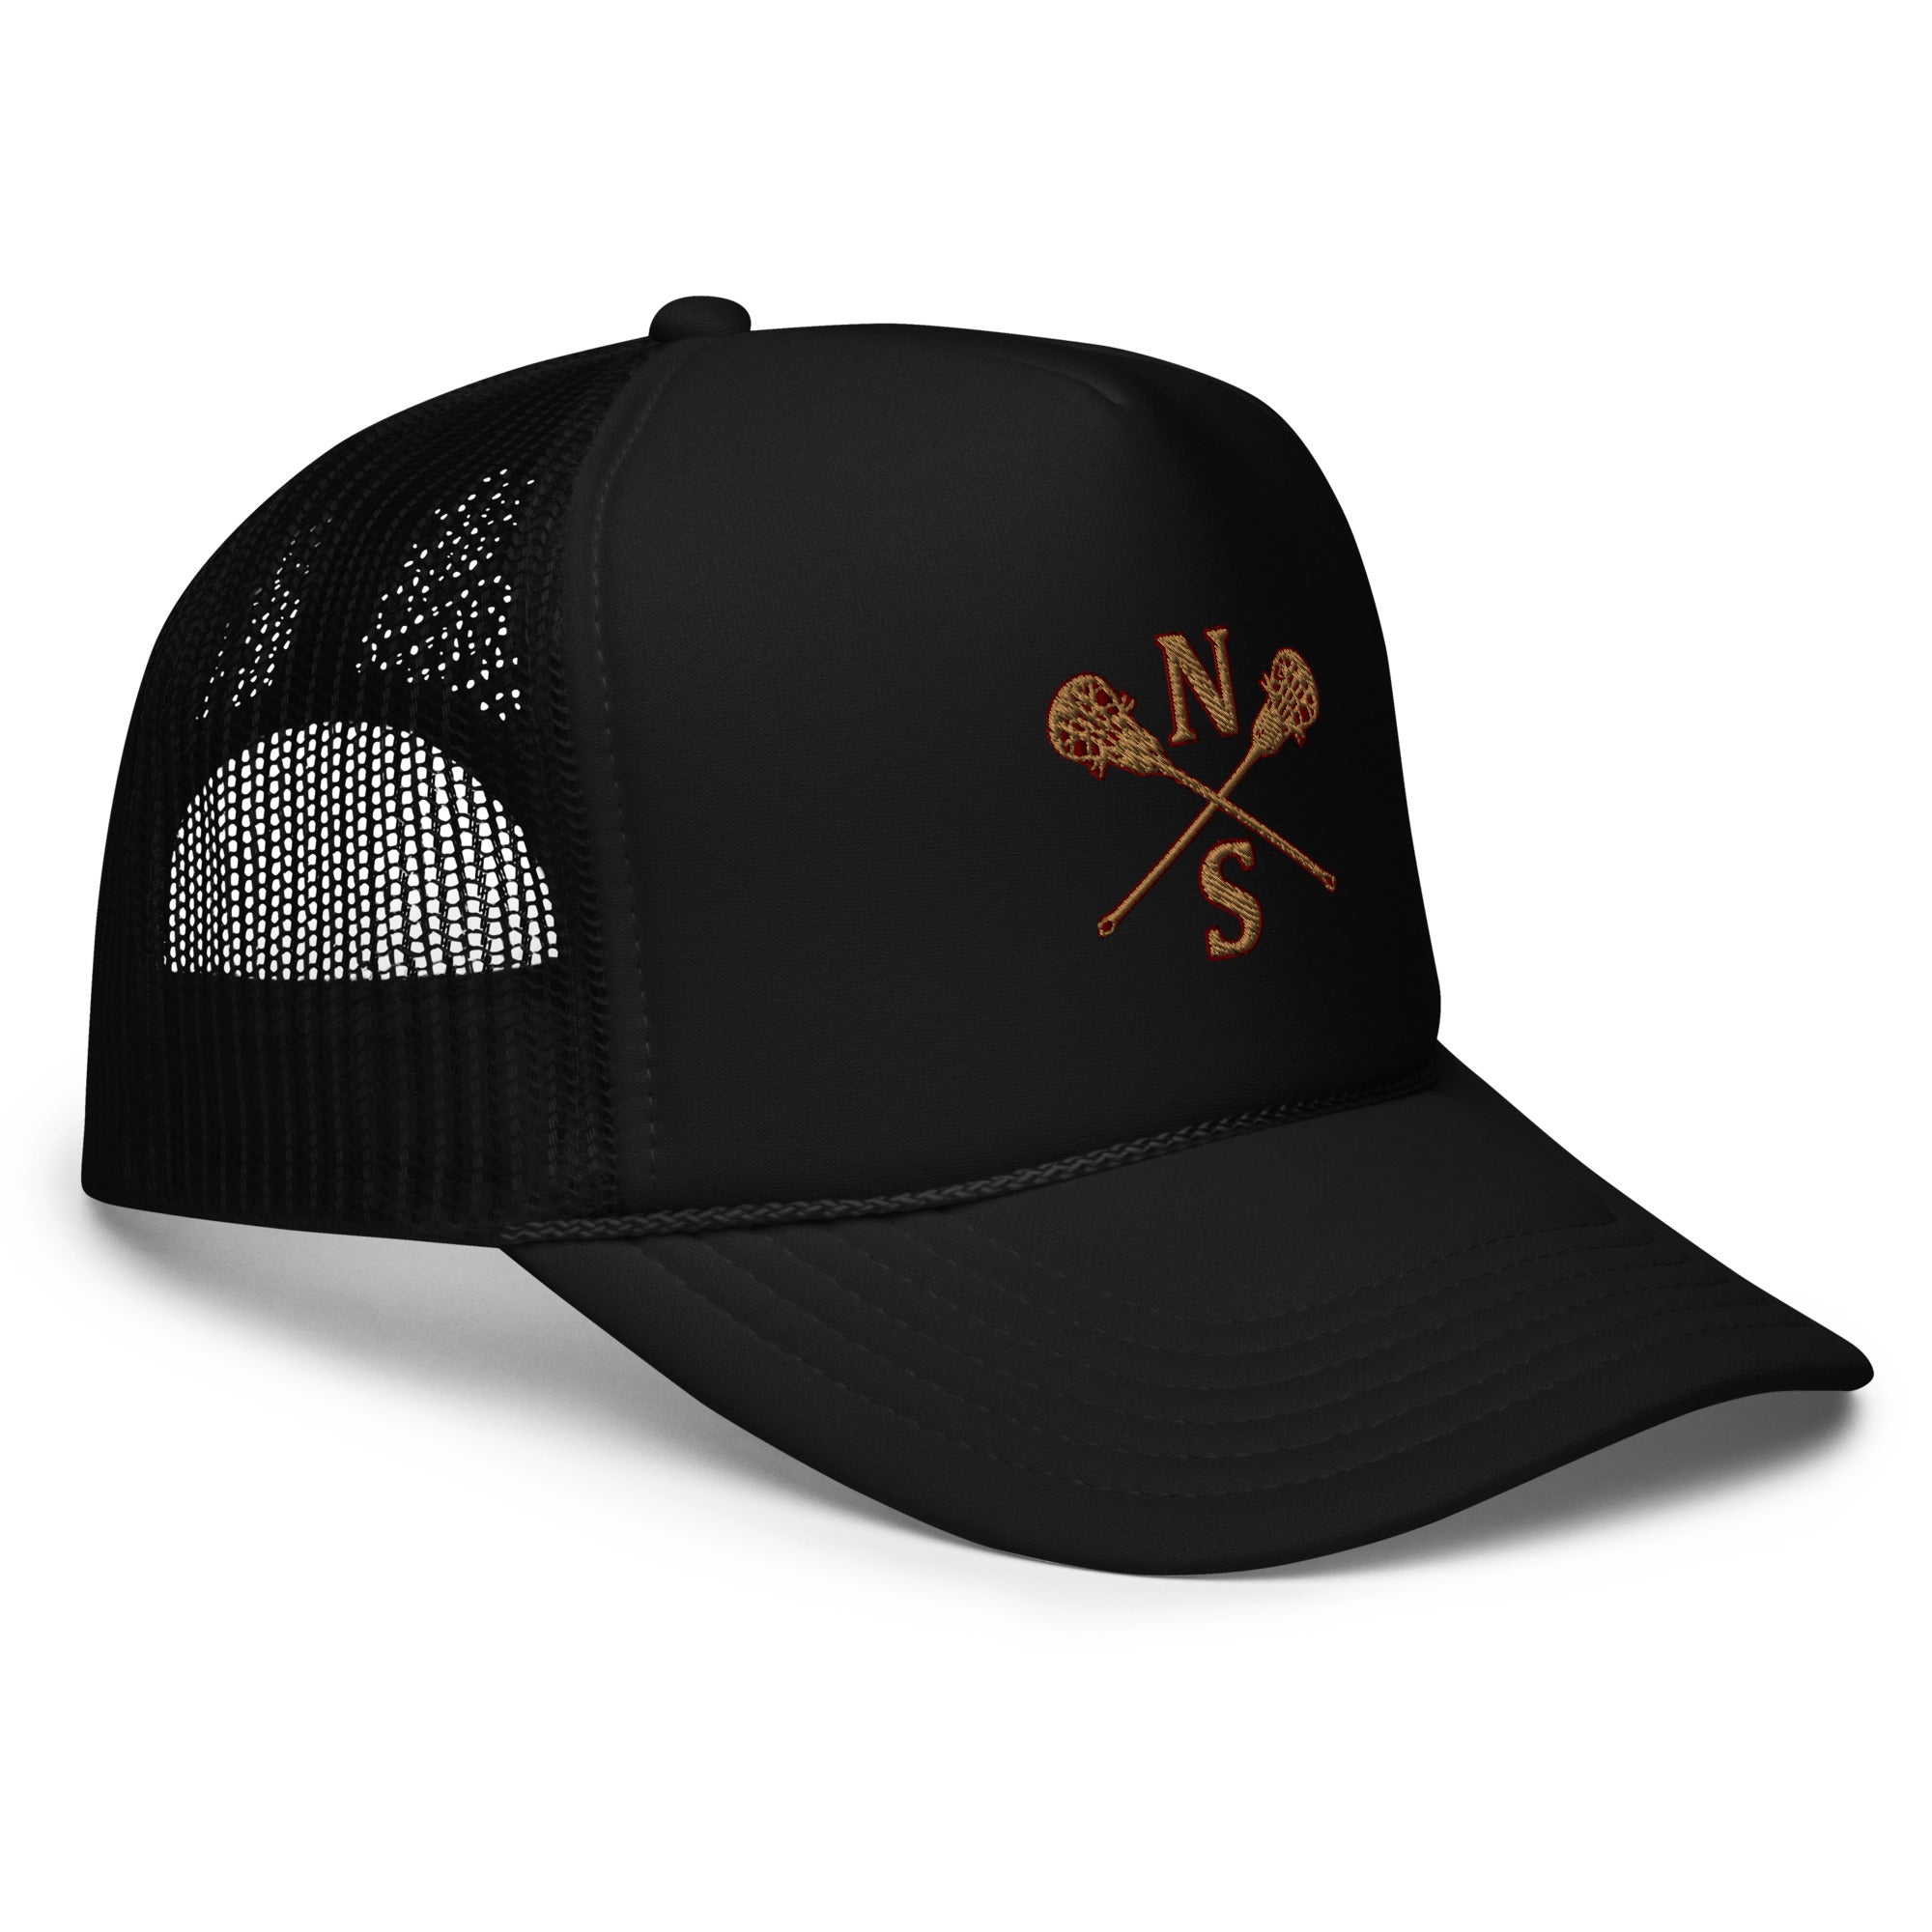 N-S Foam trucker hat (Girls Logo)